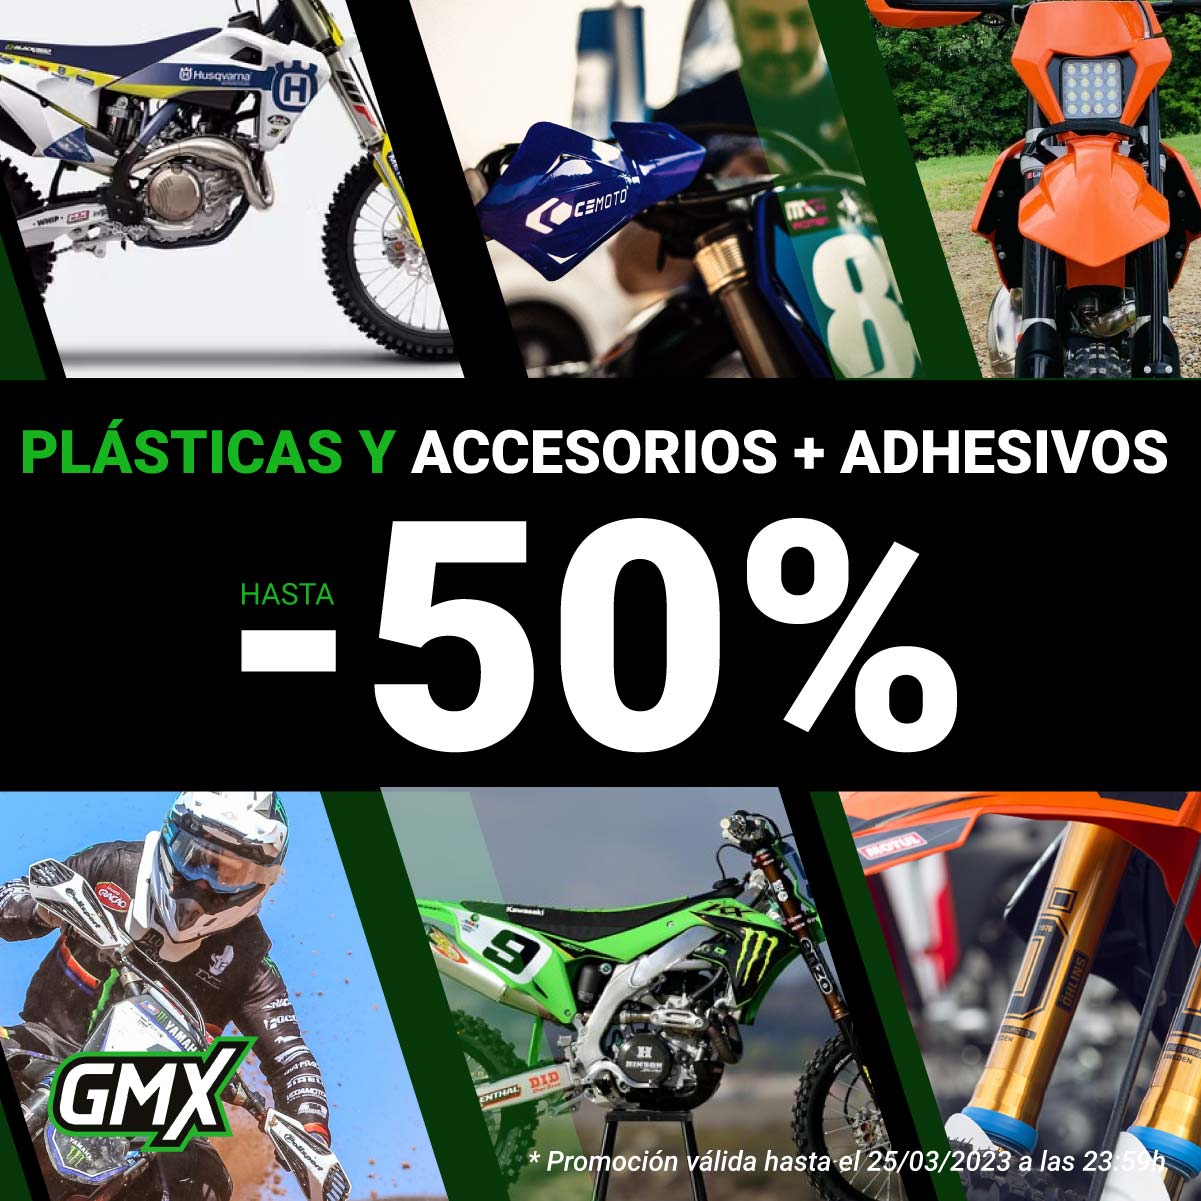 Plásticas y adhesivos: Hasta 45% de descuento en tu tienda off-road favorita